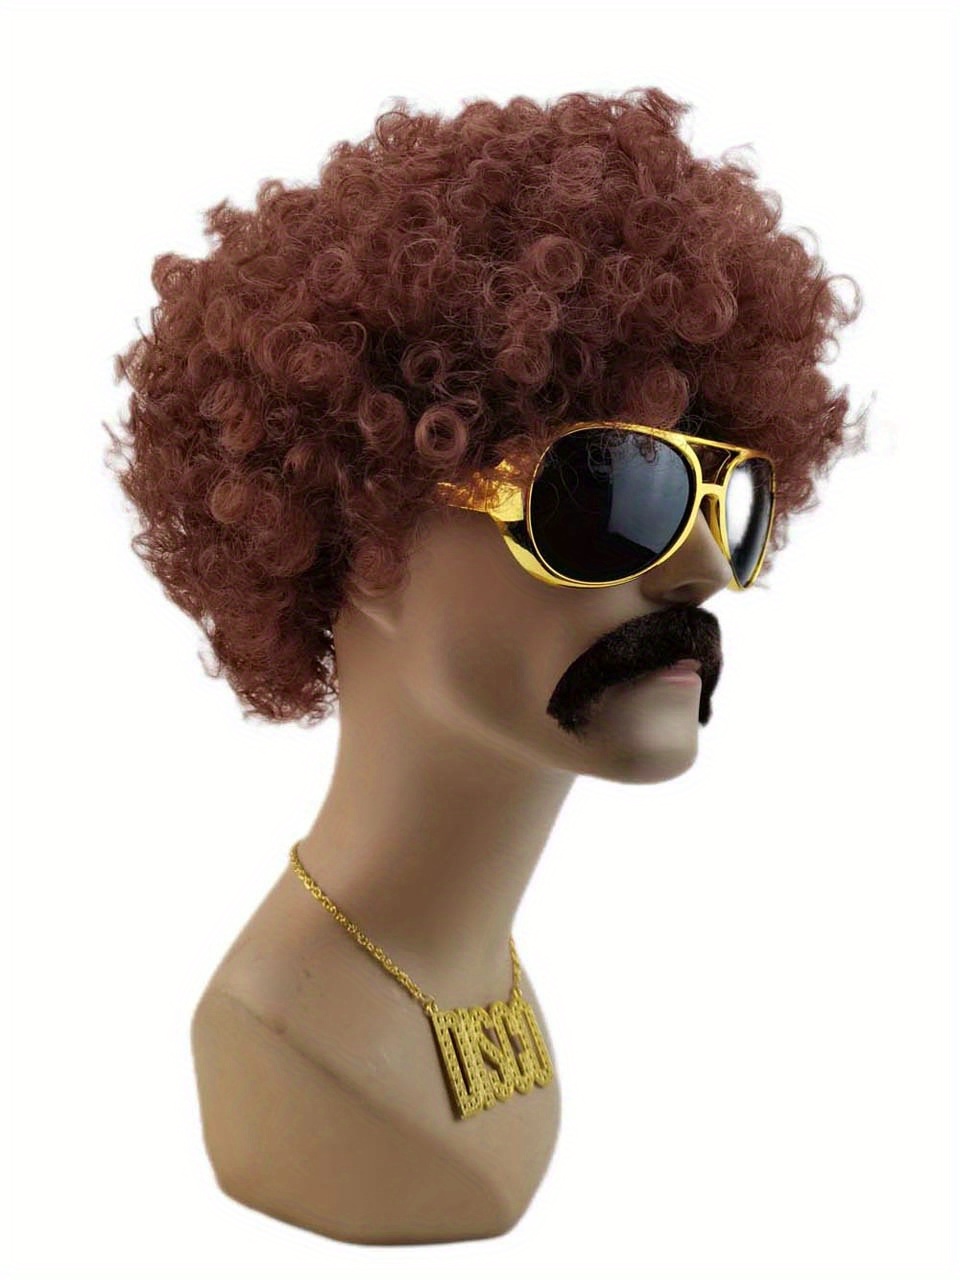 Lvefyti 5 Stück Disco Kostüm Set, 70er Jahre Bekleidung Herren Afro Perücke  Sonnenbrille Halskette Herrenhemd kostüm für 70s 80s Jahre Accessoires  Cosplay 70er Jahre Kostüm Thema Party Disco Fever(M) : : Spielzeug